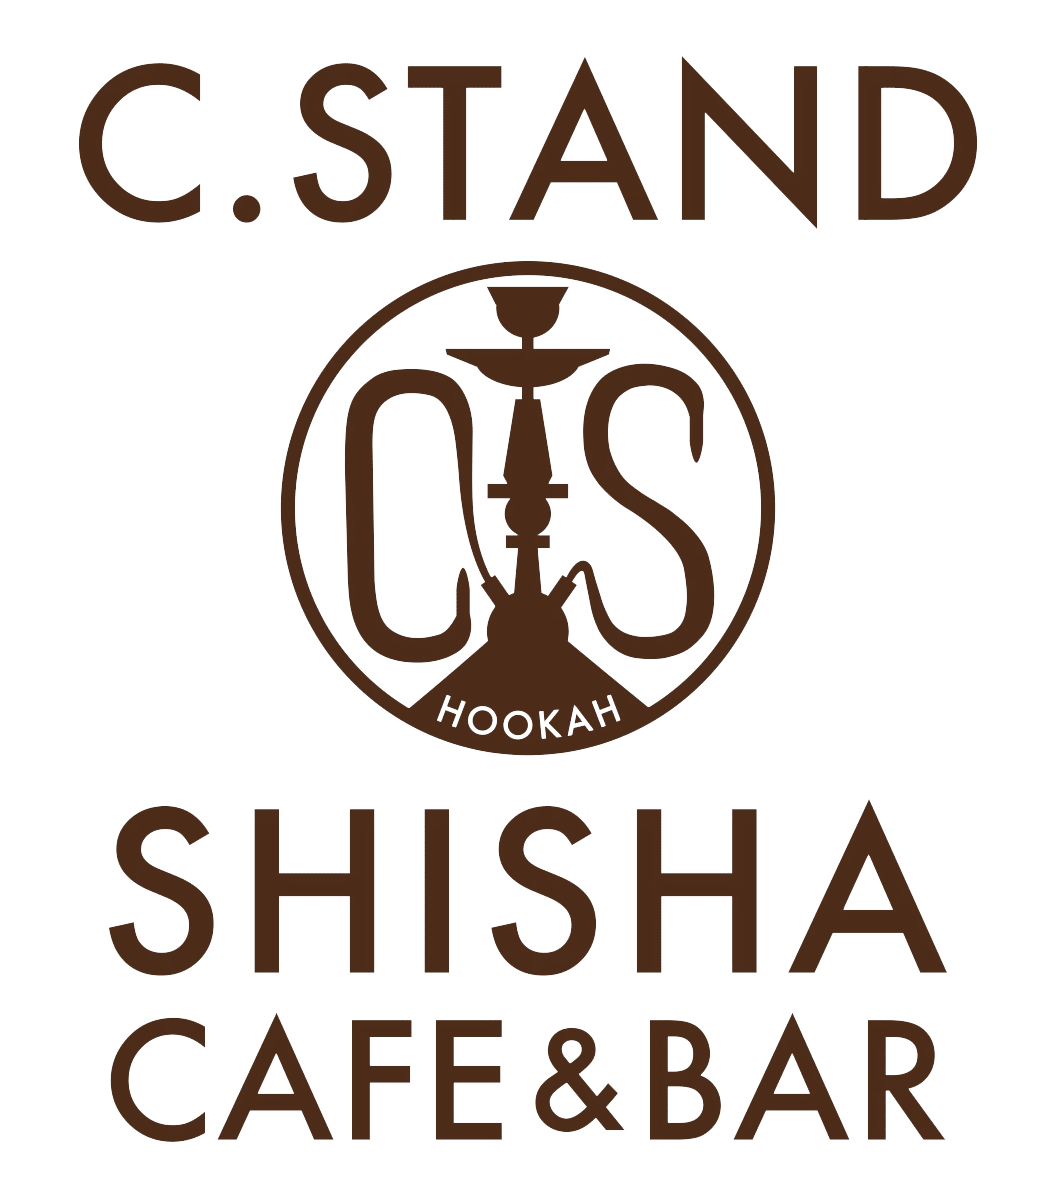 Shisha Cafe & Bar C.STAND 横滨西口